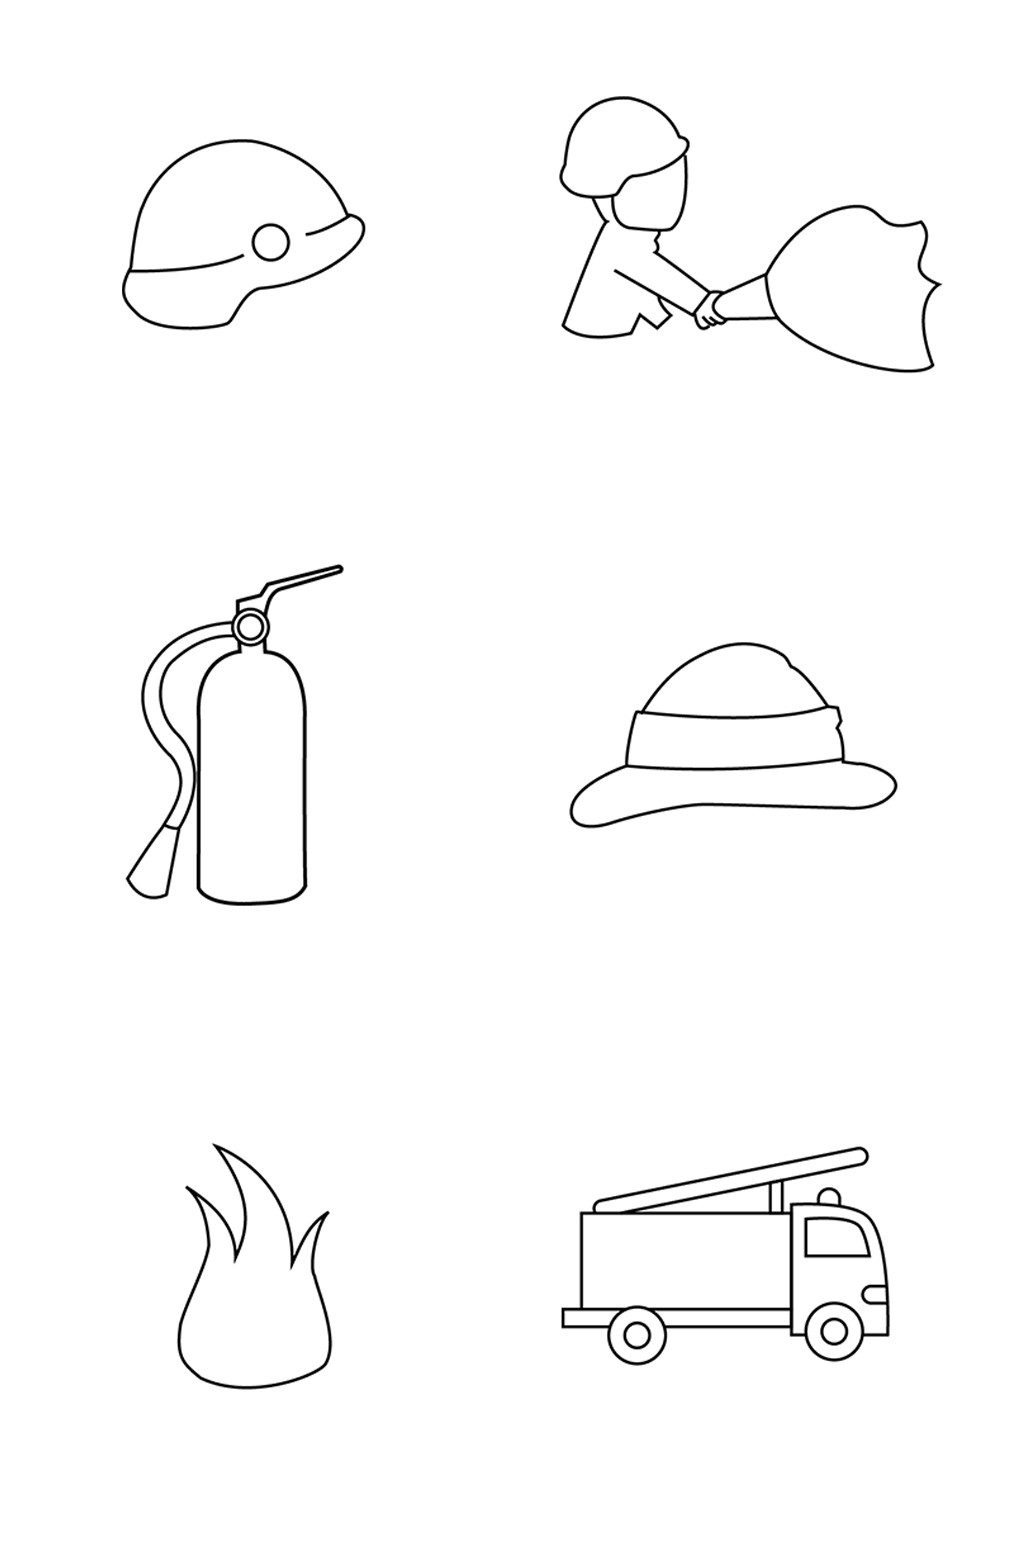 消防logo设计素材 手绘图片